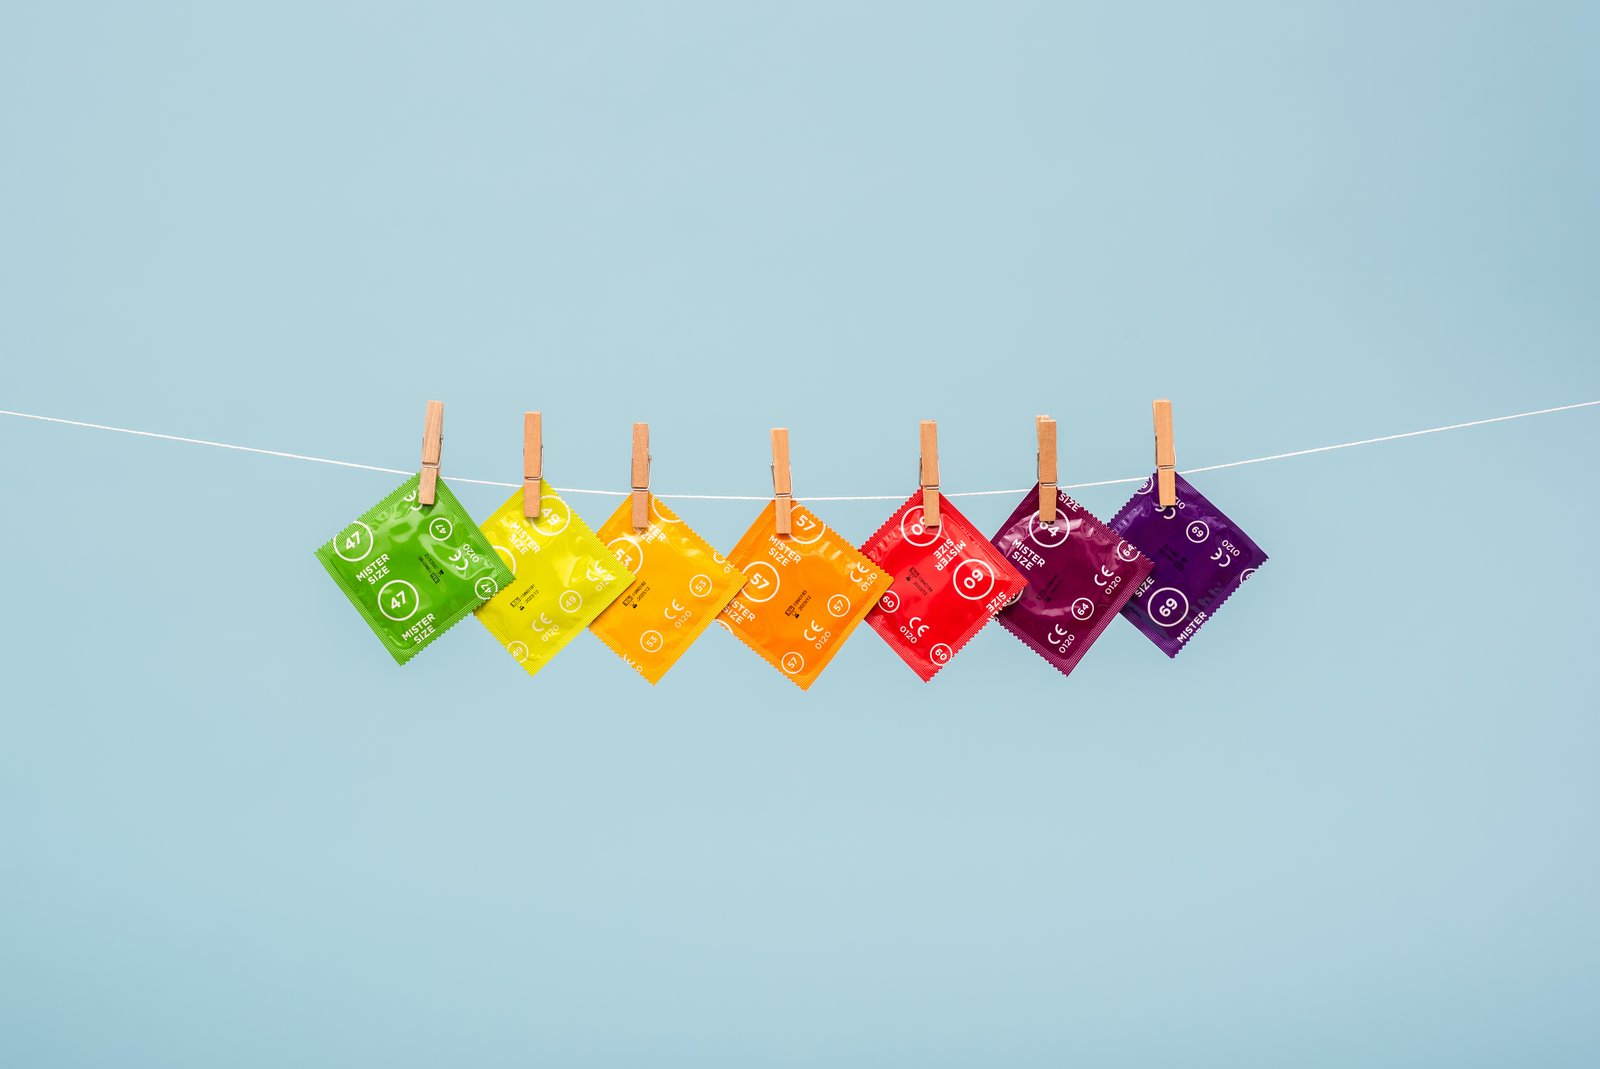 Kondomy správné velikosti mohou pomoci předcházet erektilní dysfunkci